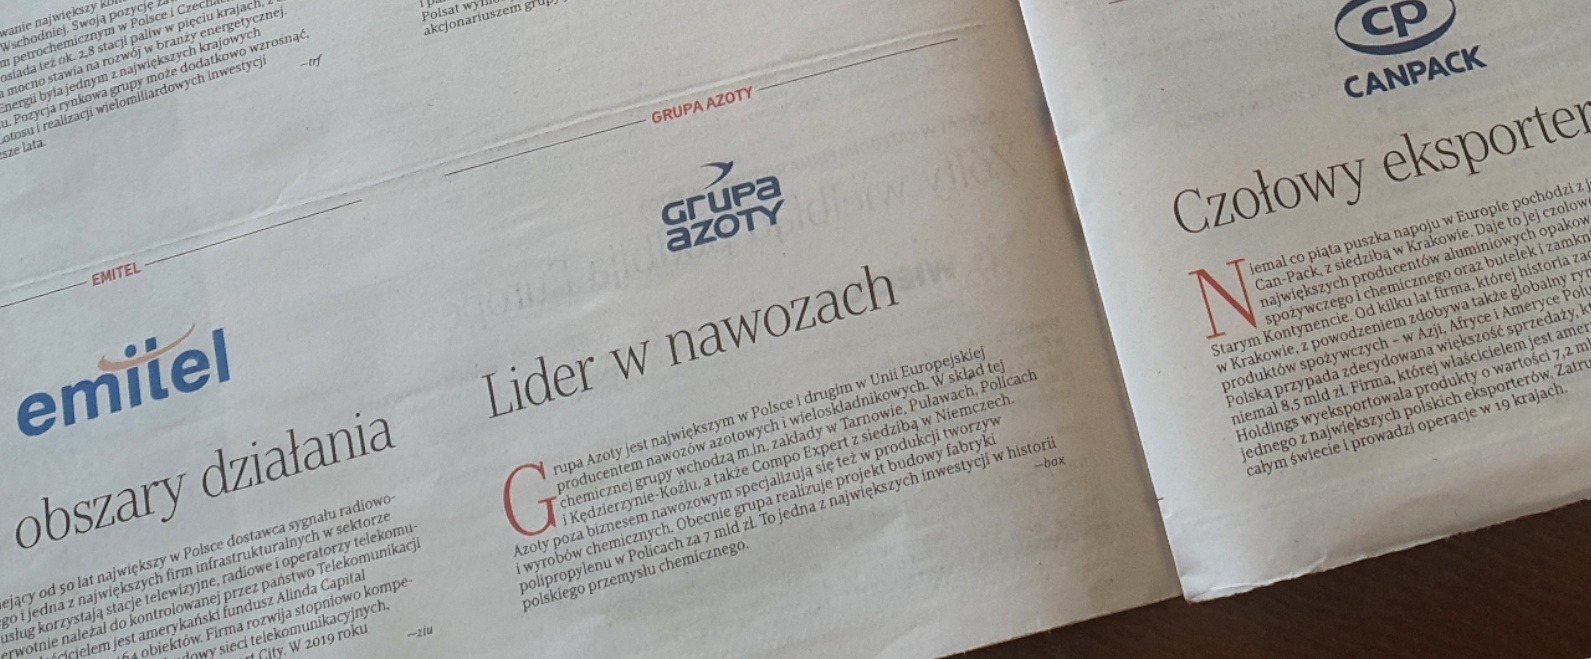 Grupa Azoty w elitarnym gronie firm najważniejszych dla Polski 